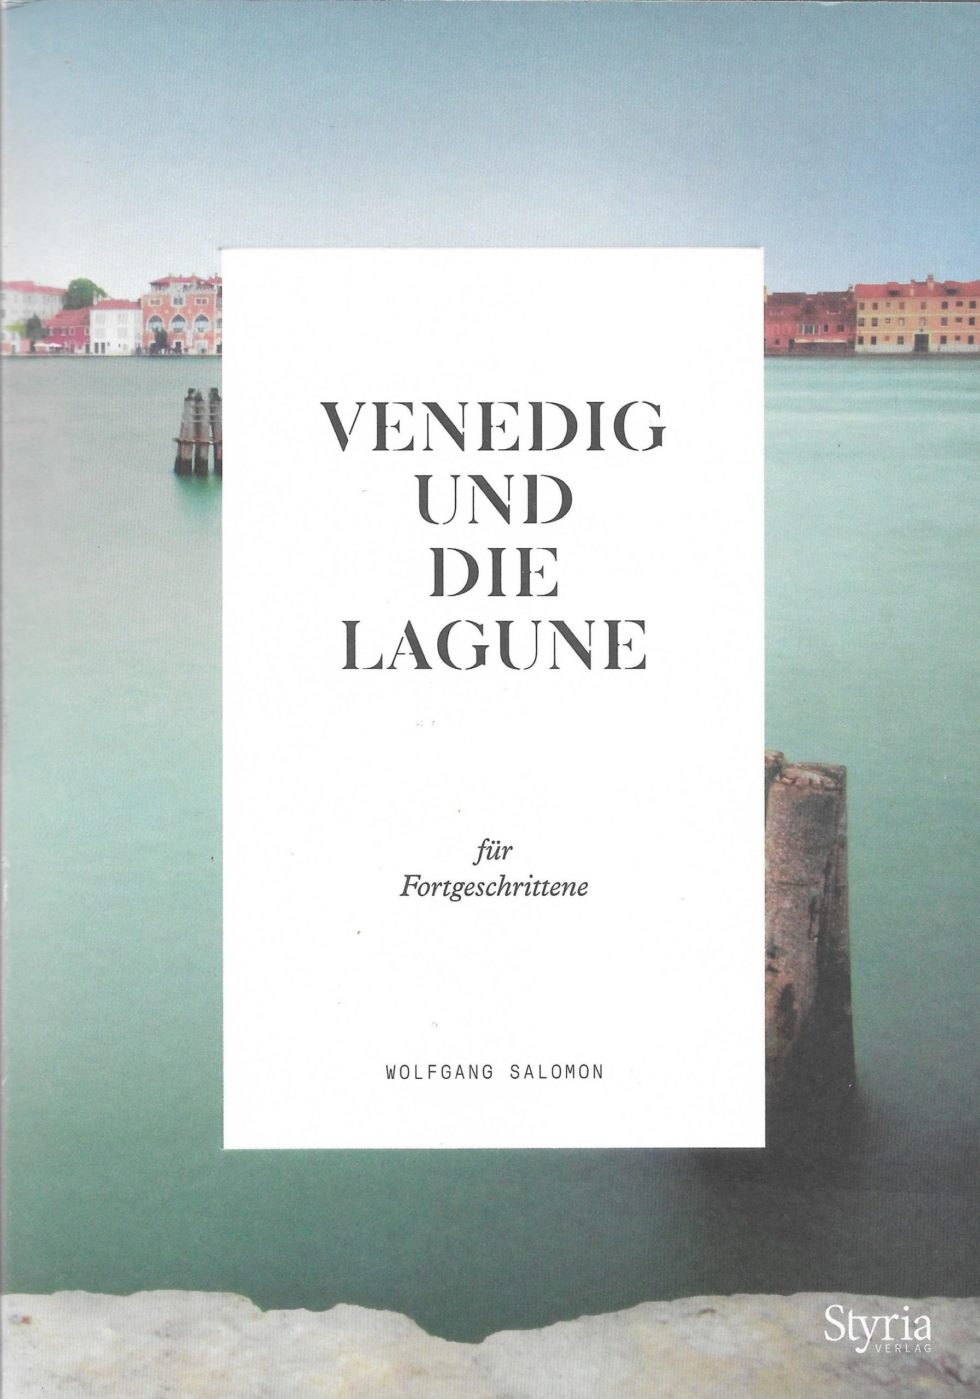 Venedig und die Lagune für Fortgeschrittene | Styria Verlage | Buch | Wolfgang Salomon | abseitsderpfade.at | Abseits der Pfade